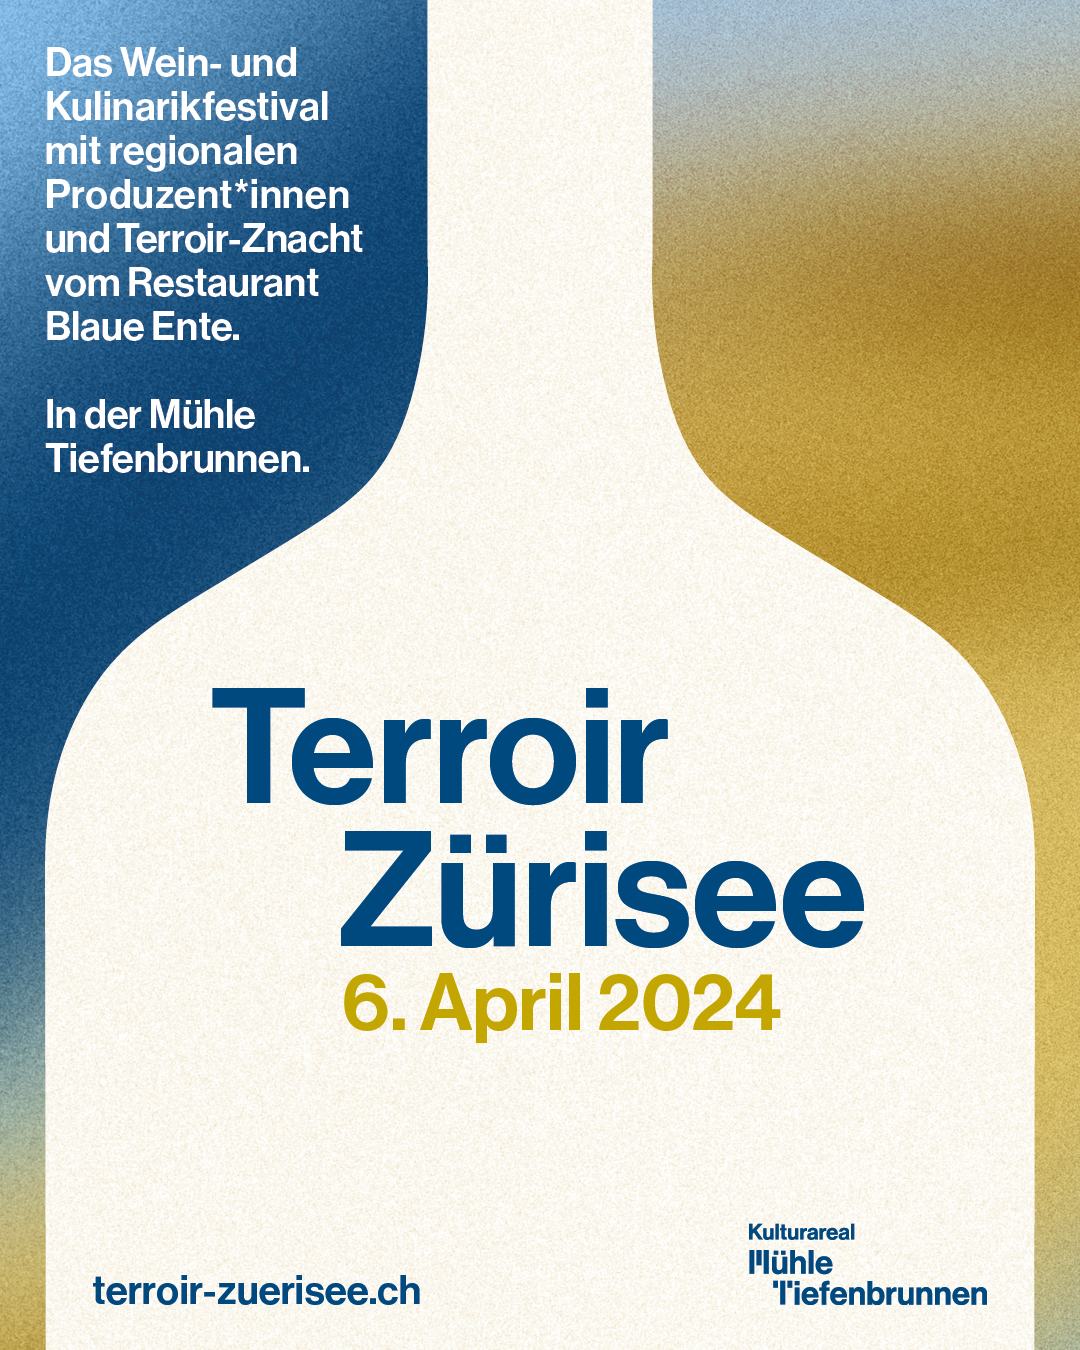 Terroir Zürisee Plakat für das Kulinarikfestival im Kulturareal Mühle Tiefenbrunnen, Zürich am 6. April 2024